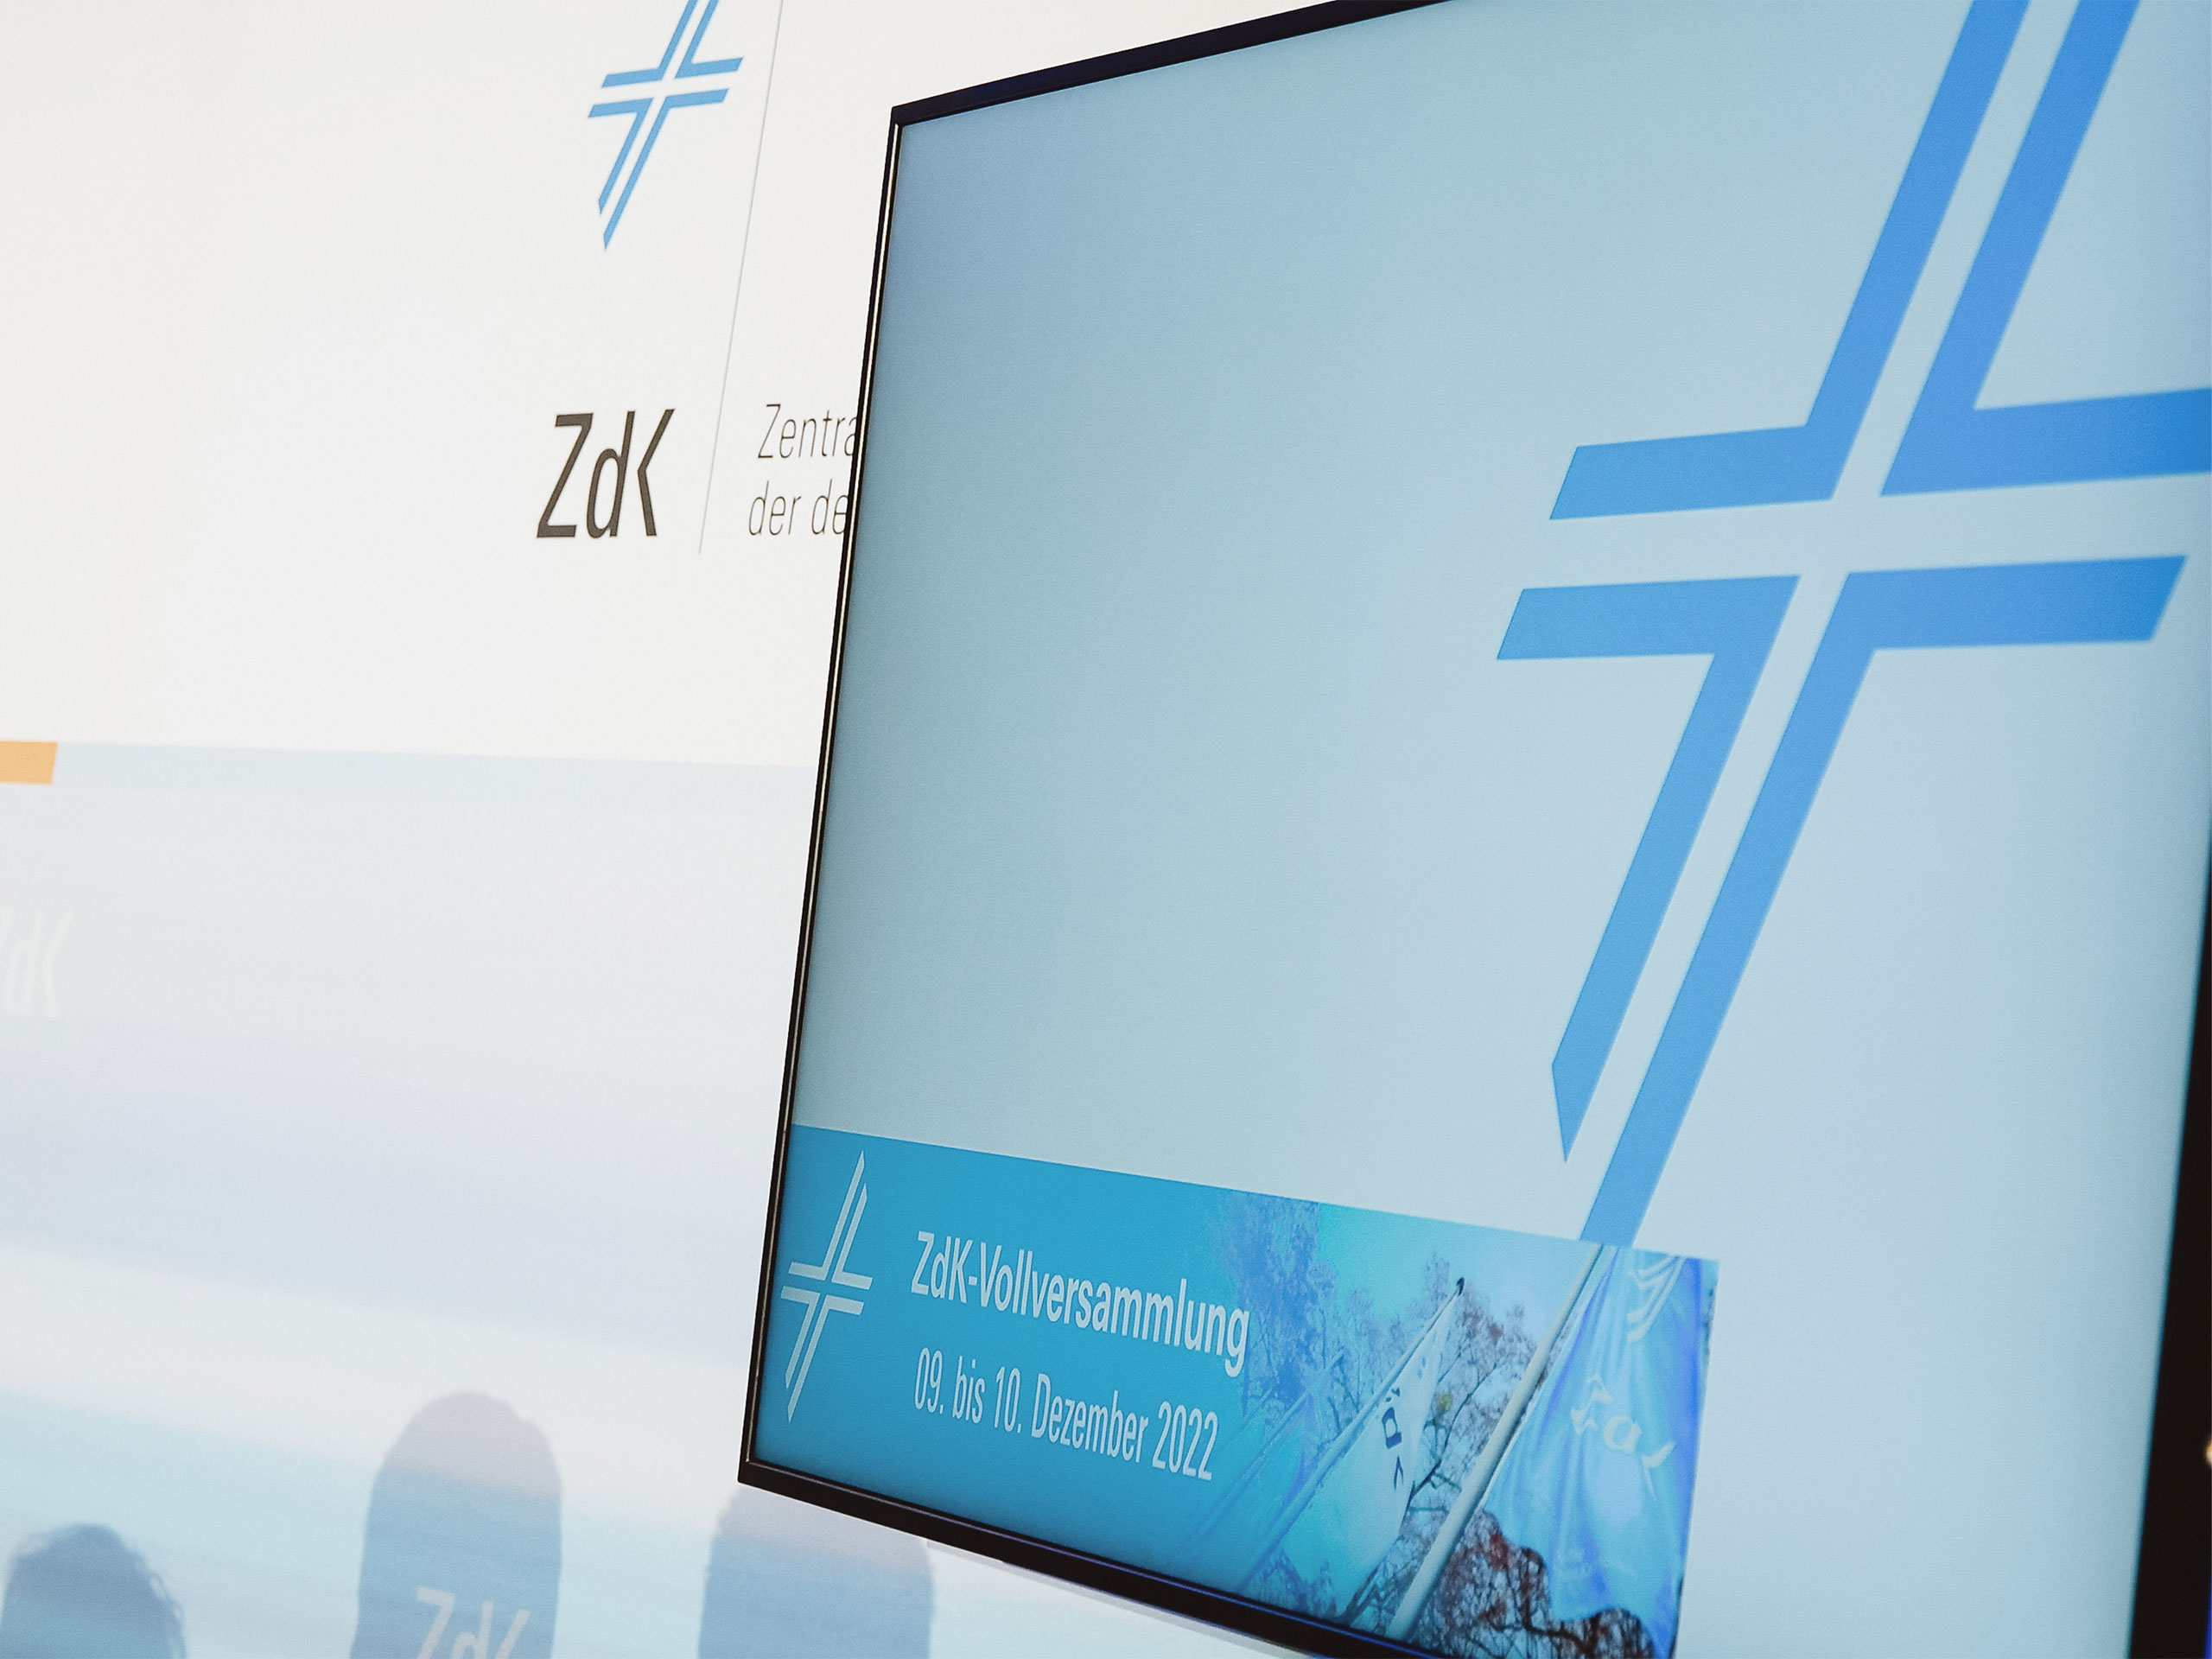 Bildschirm mit Logo des ZdK steht leicht angeschrägt vor der Presserückwand